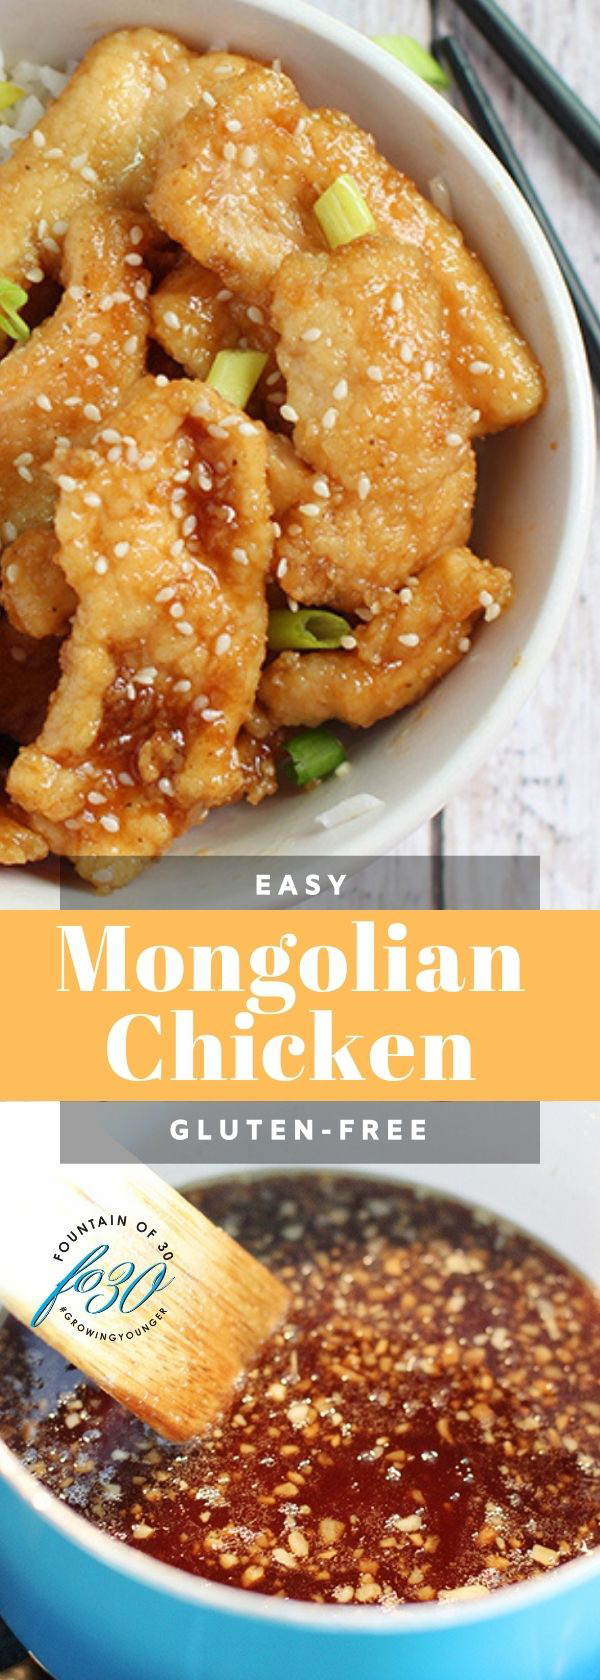 mongolian chicken fountainof30